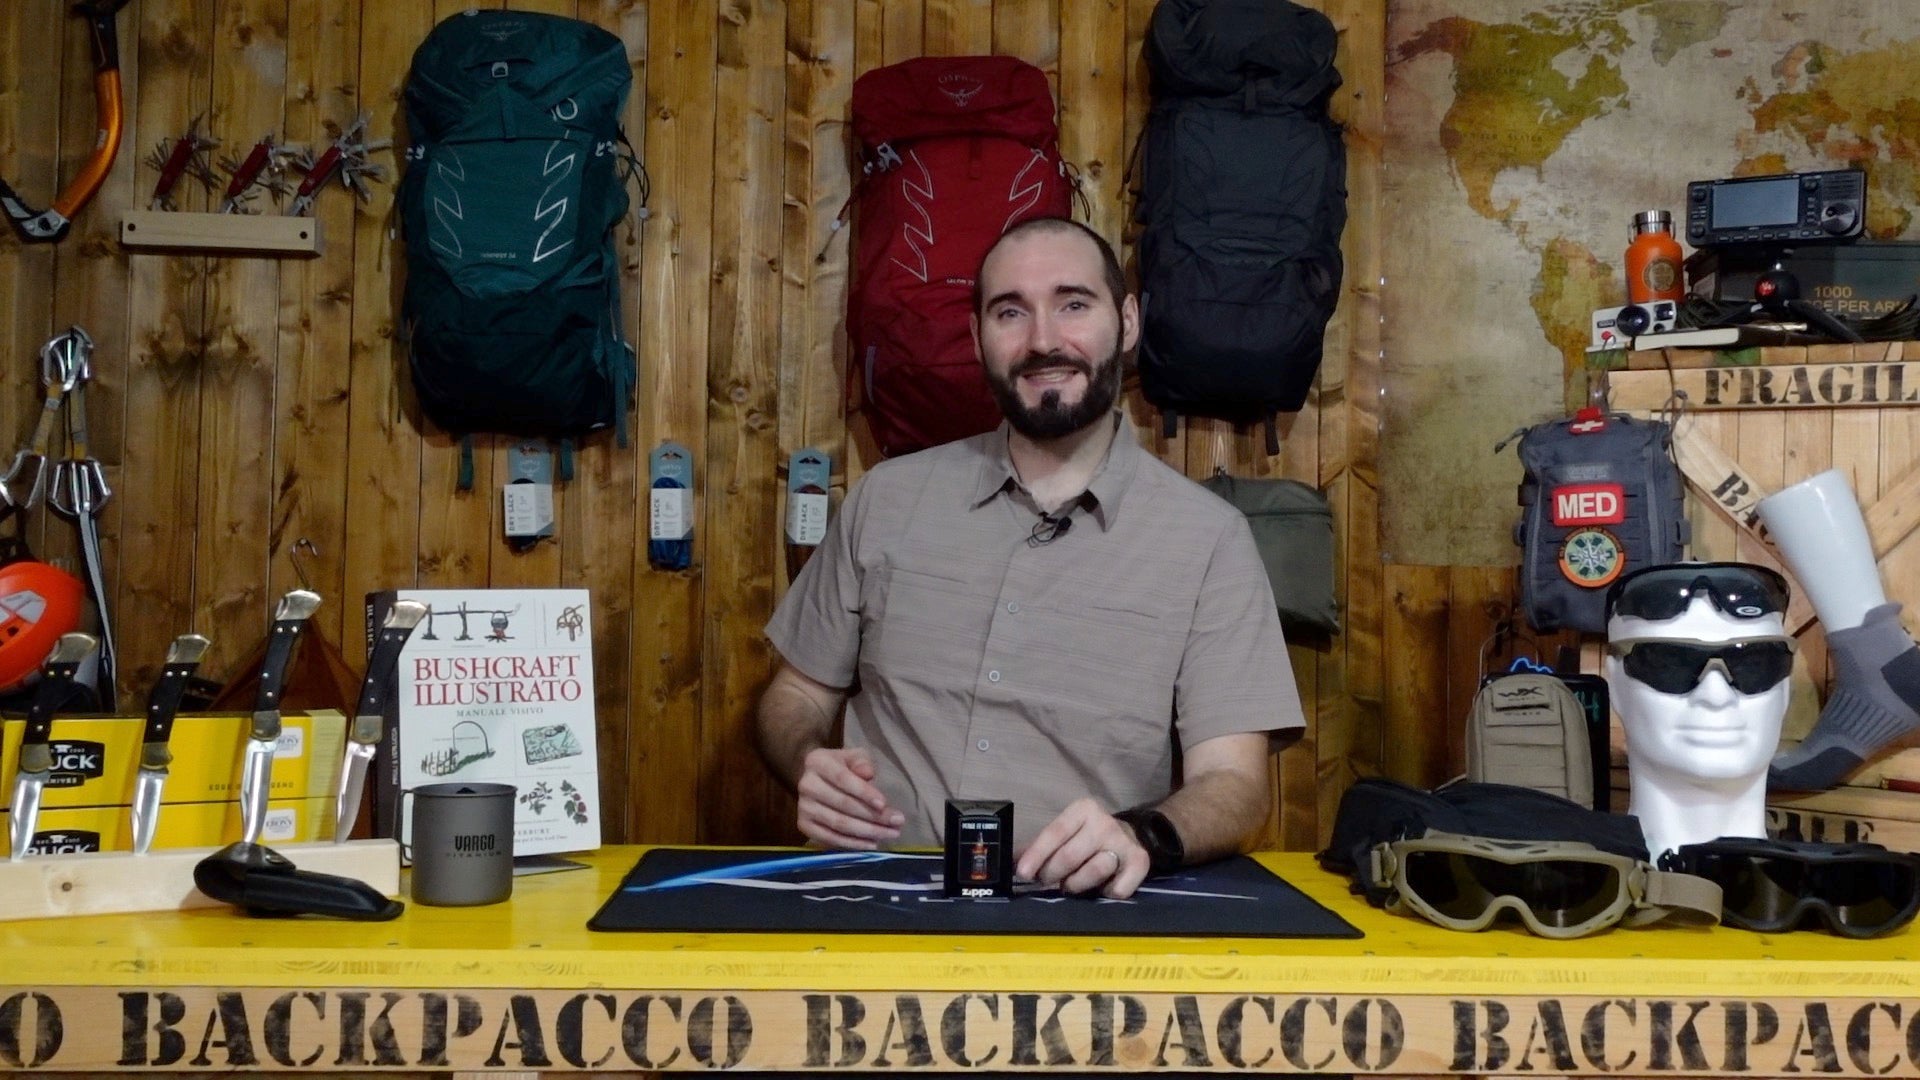 Paolo di backpacco spiega lo Zippo | Jack Daniel's 